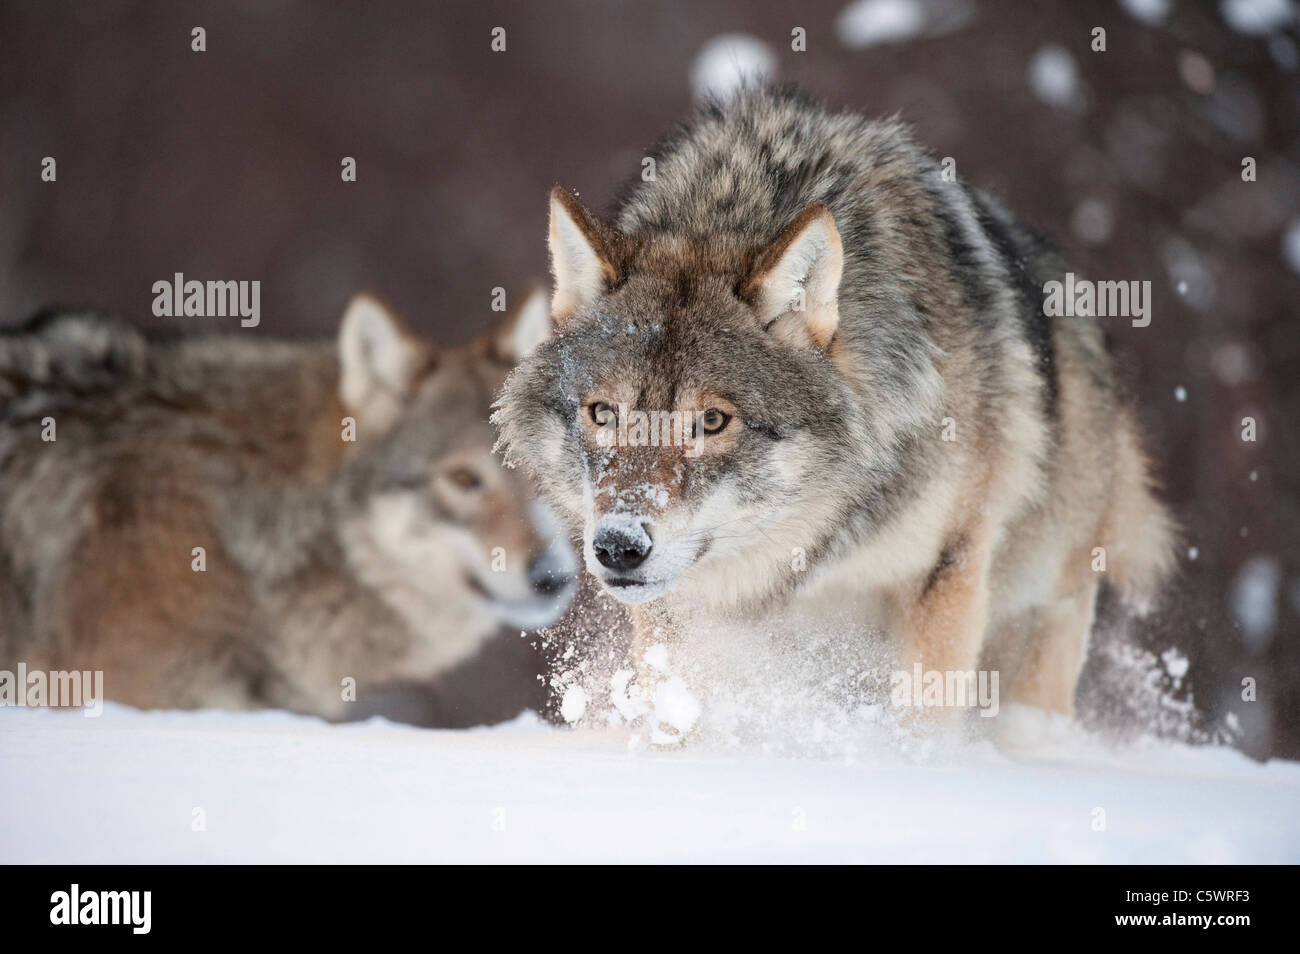 Le loup gris d'Europe (Canis lupus) dans la neige (prises dans des conditions contrôlées). La Norvège. Banque D'Images